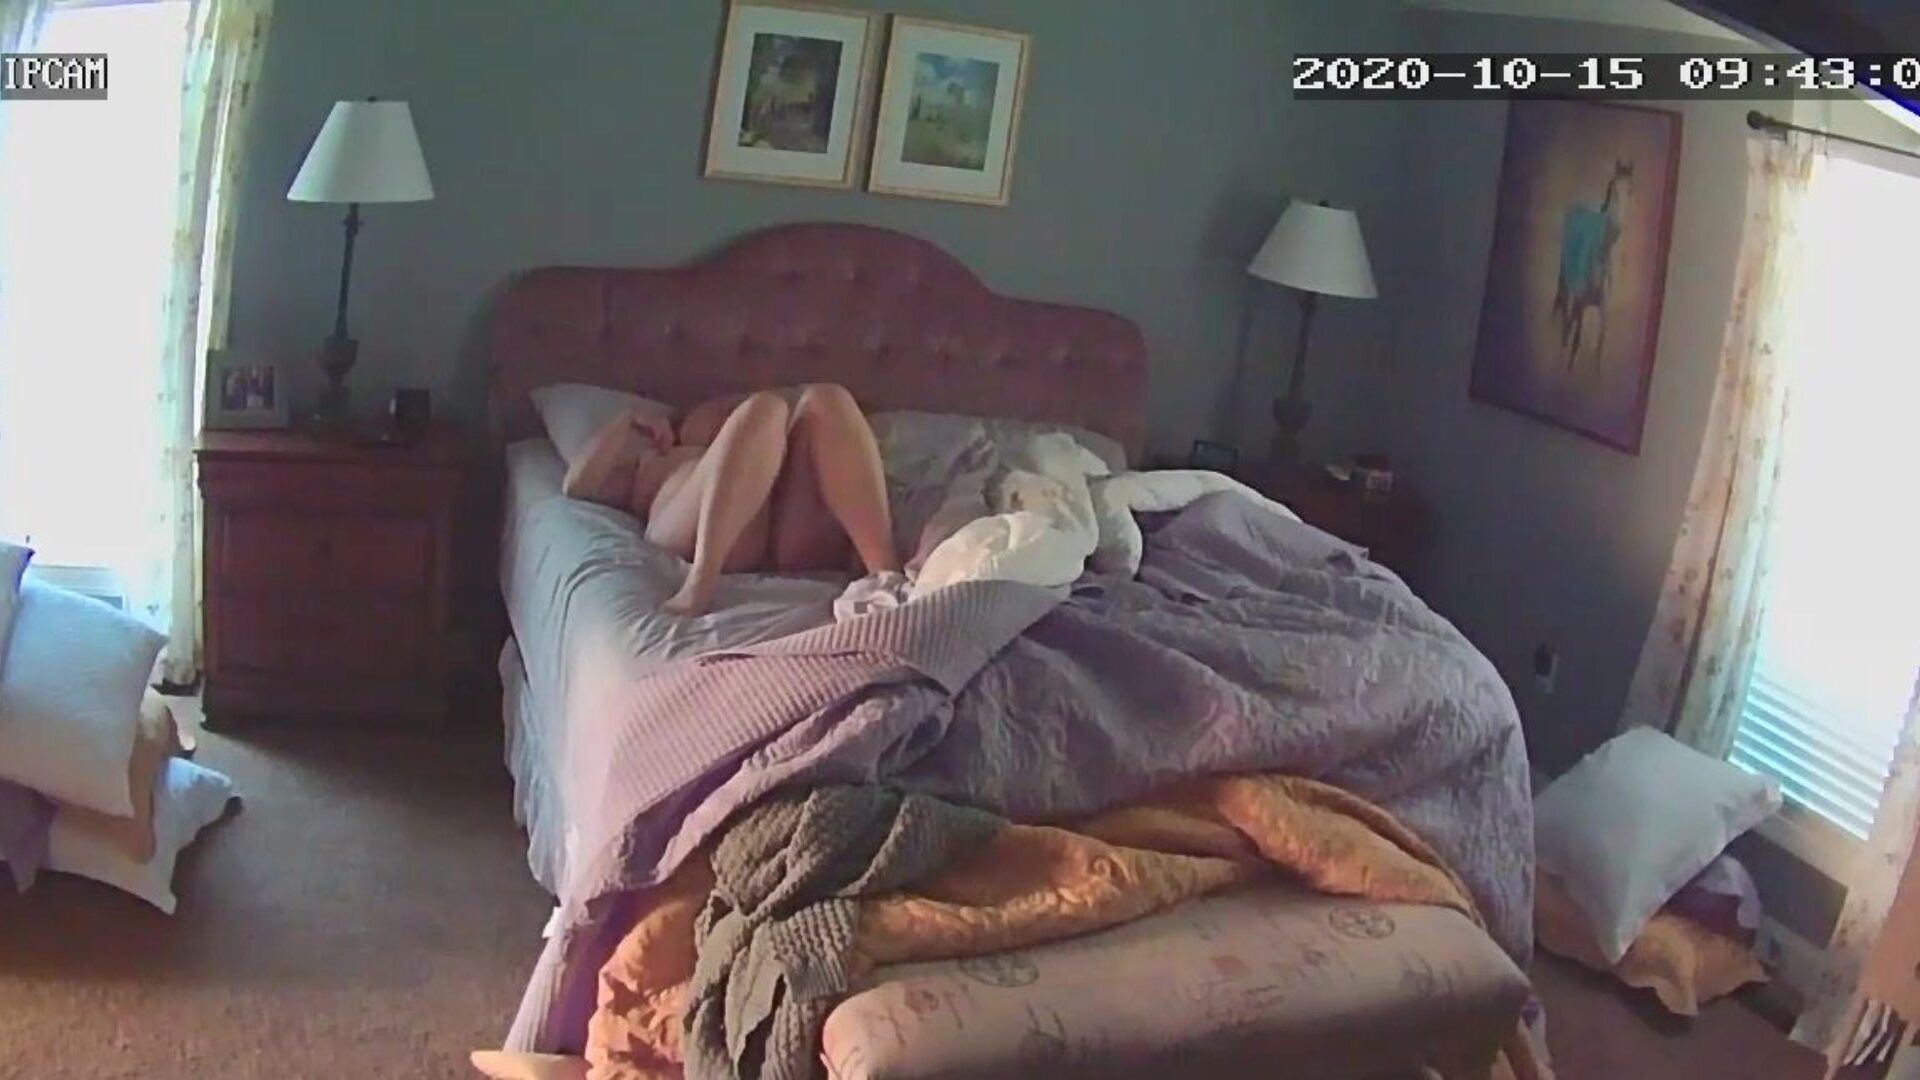 manželka si hraje sama se sebou po probuzení skryté kamery